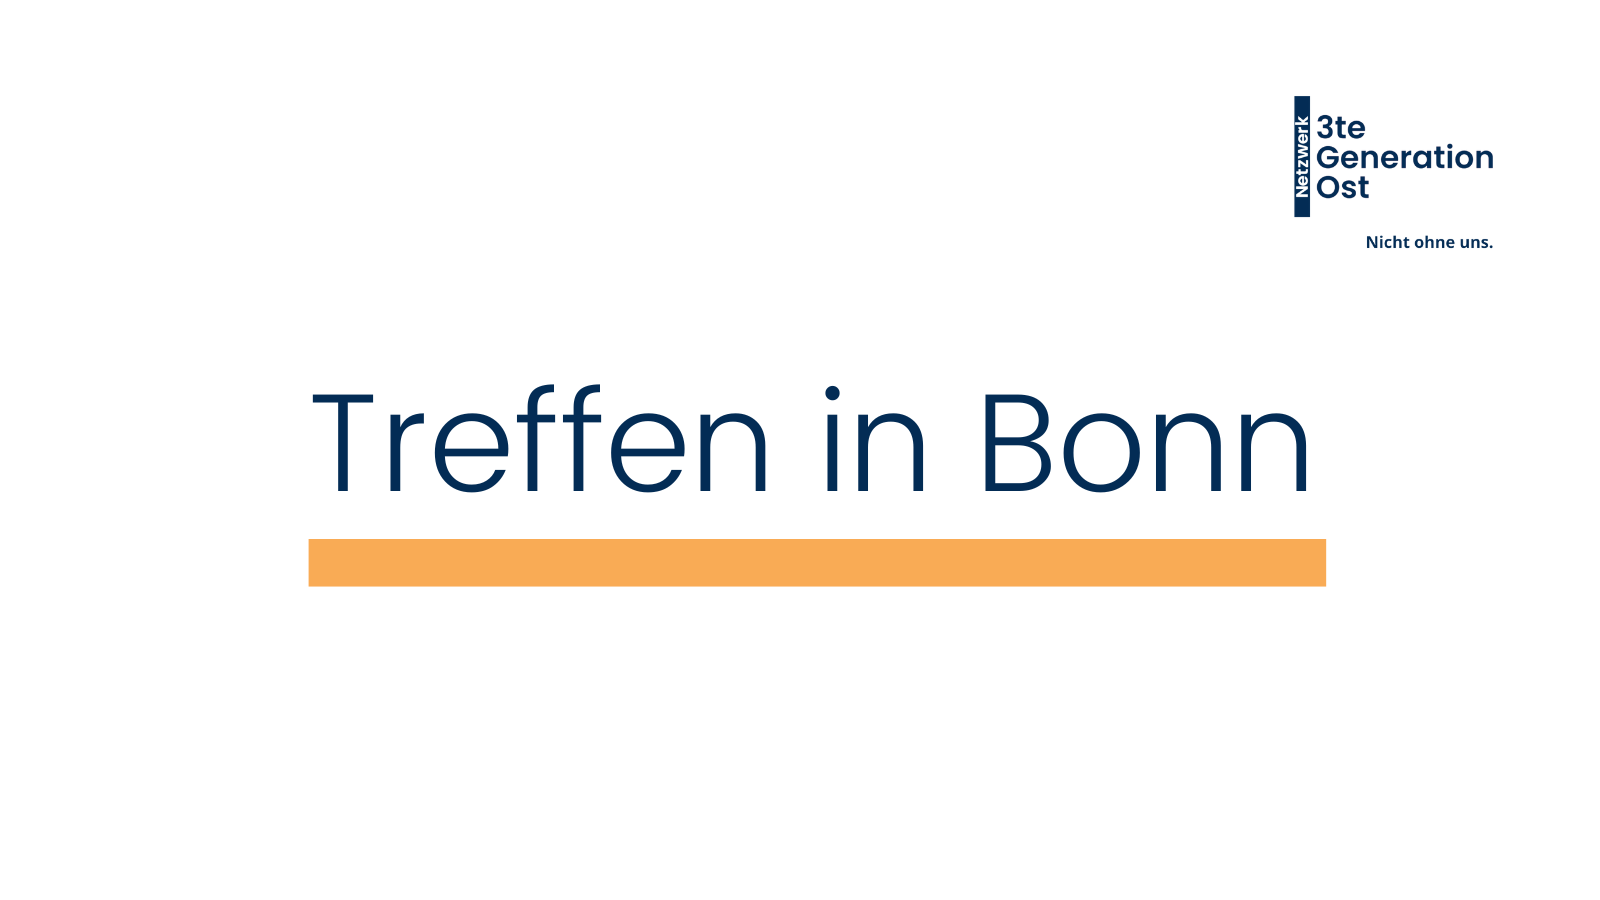 Logo Netzwerk 3te Generation Ost oben rechts. Mittig platziert in dunkelblau - Treffen in Bonn - mit orangenem Unterstrich